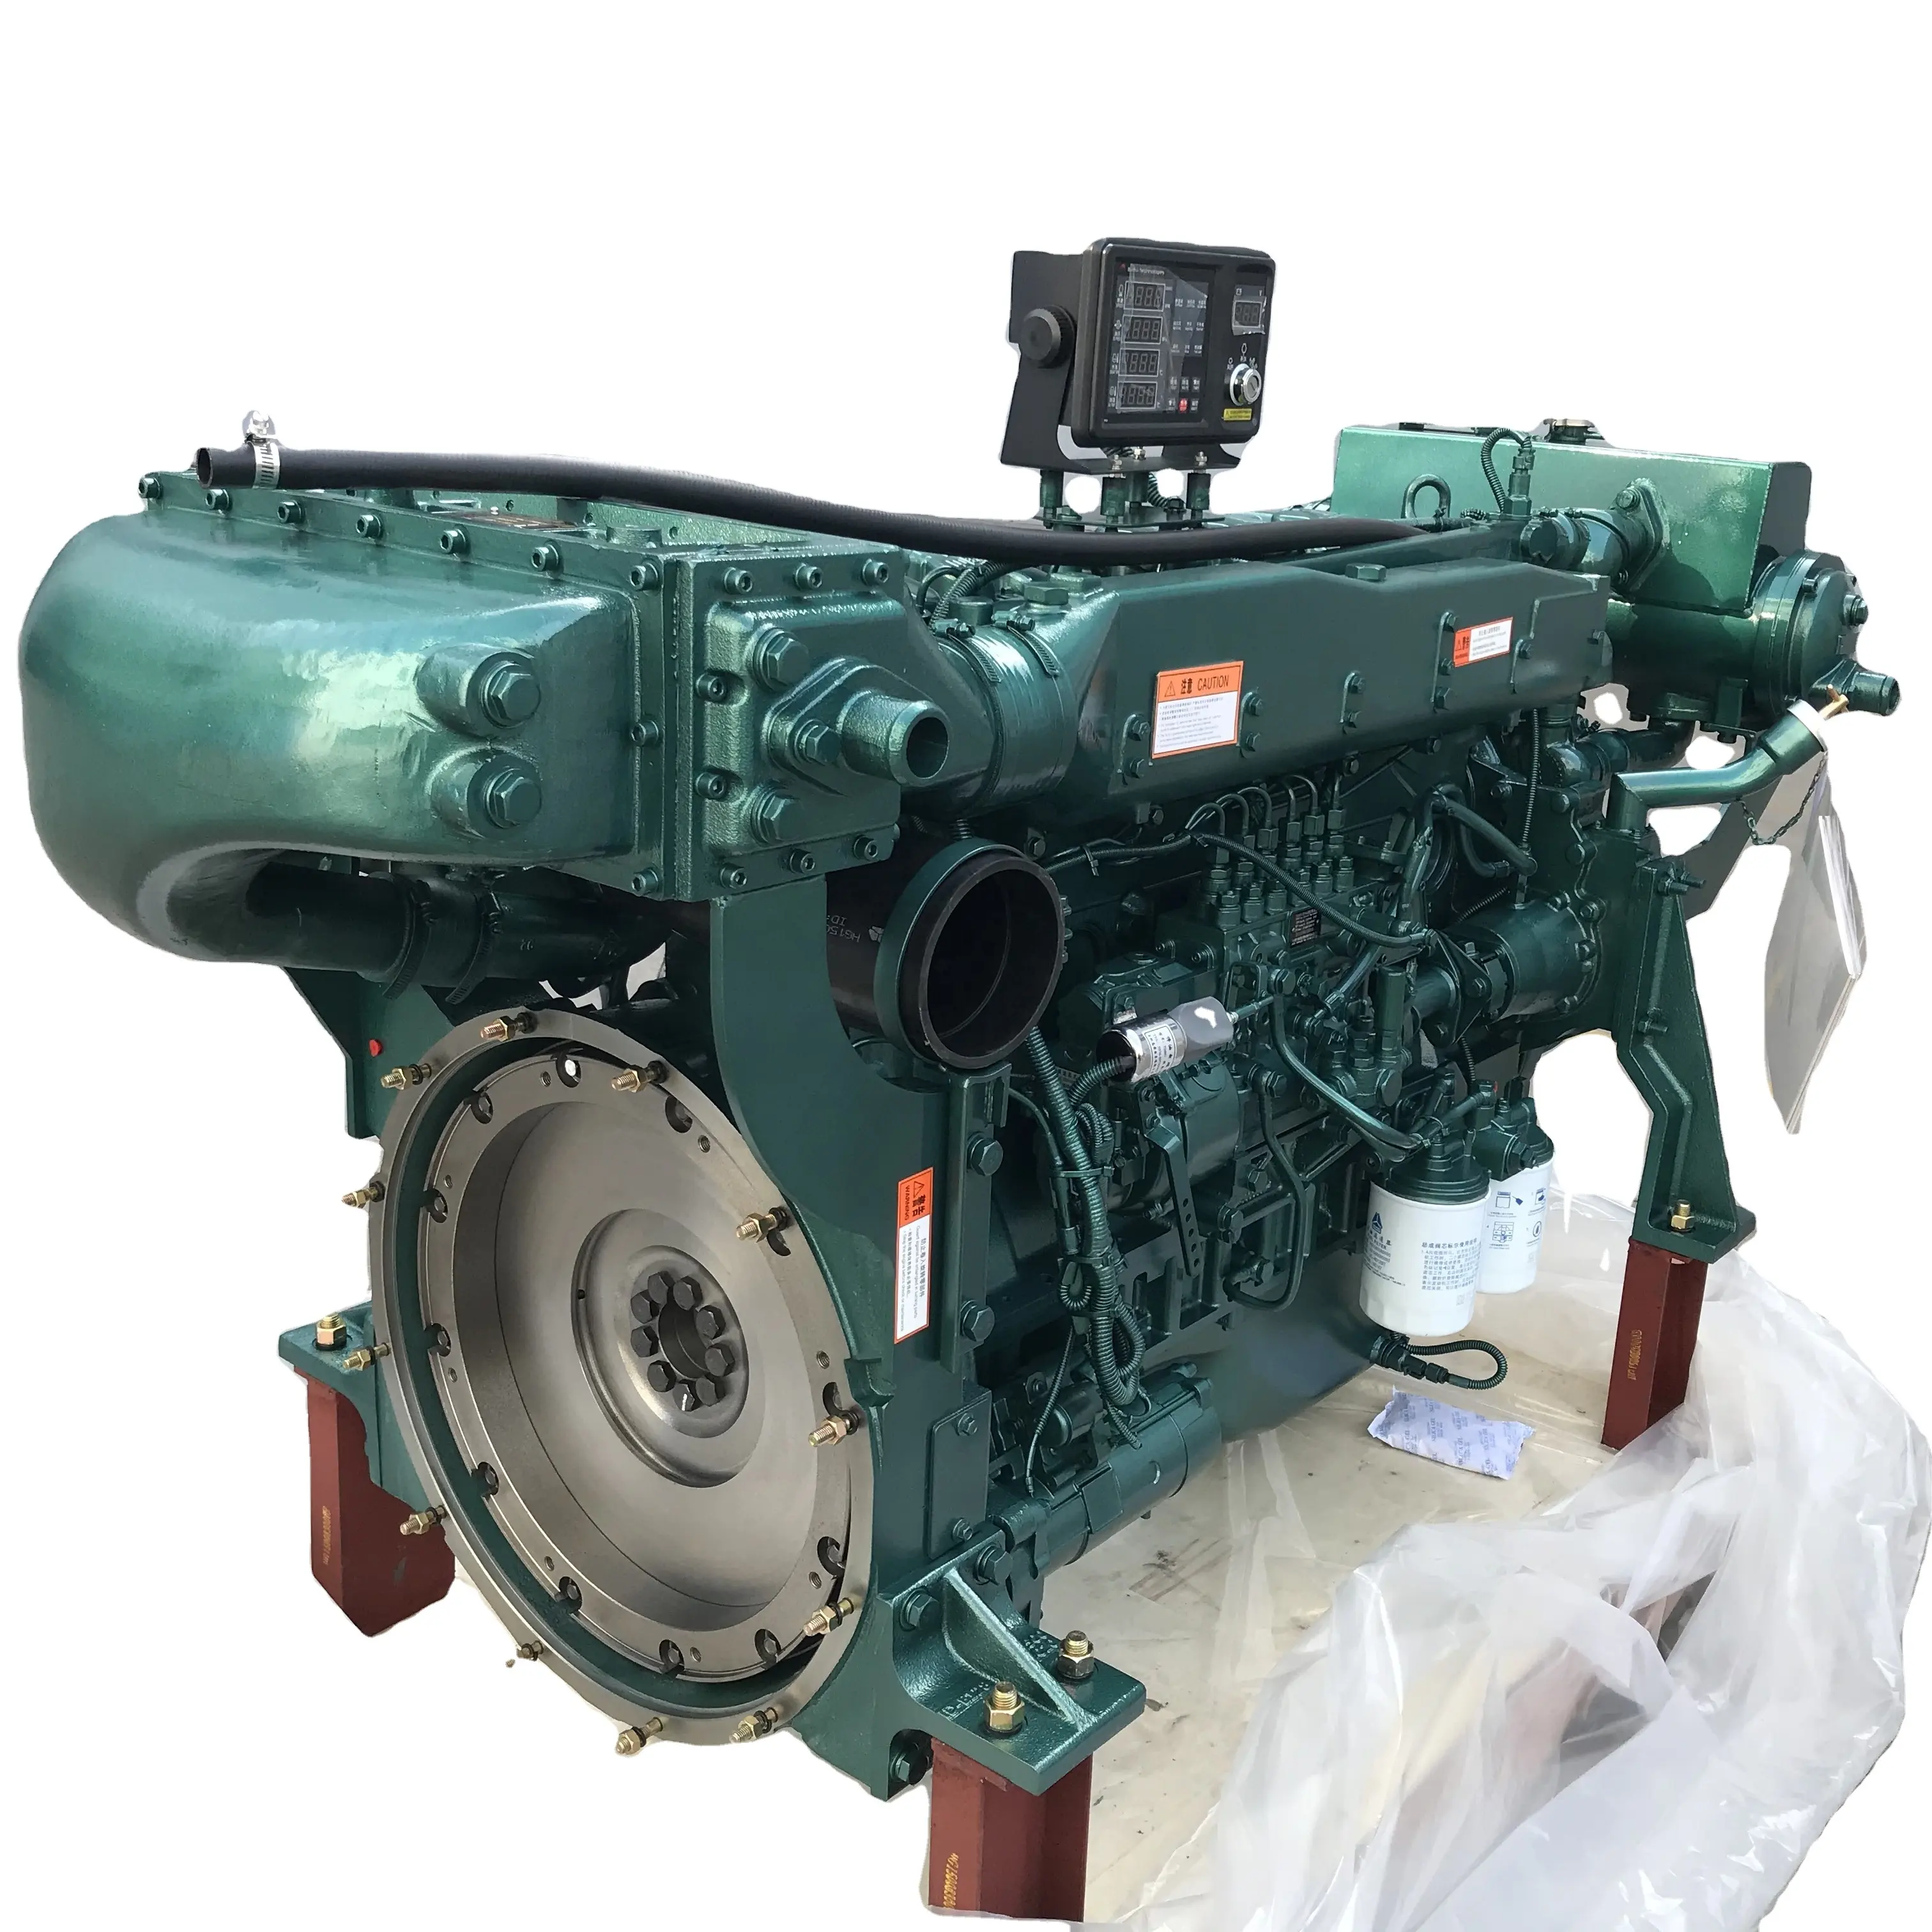 محرك قوارب ديزل WD615.67 240HP من Sinotruk للبيع مصنوع في الصين